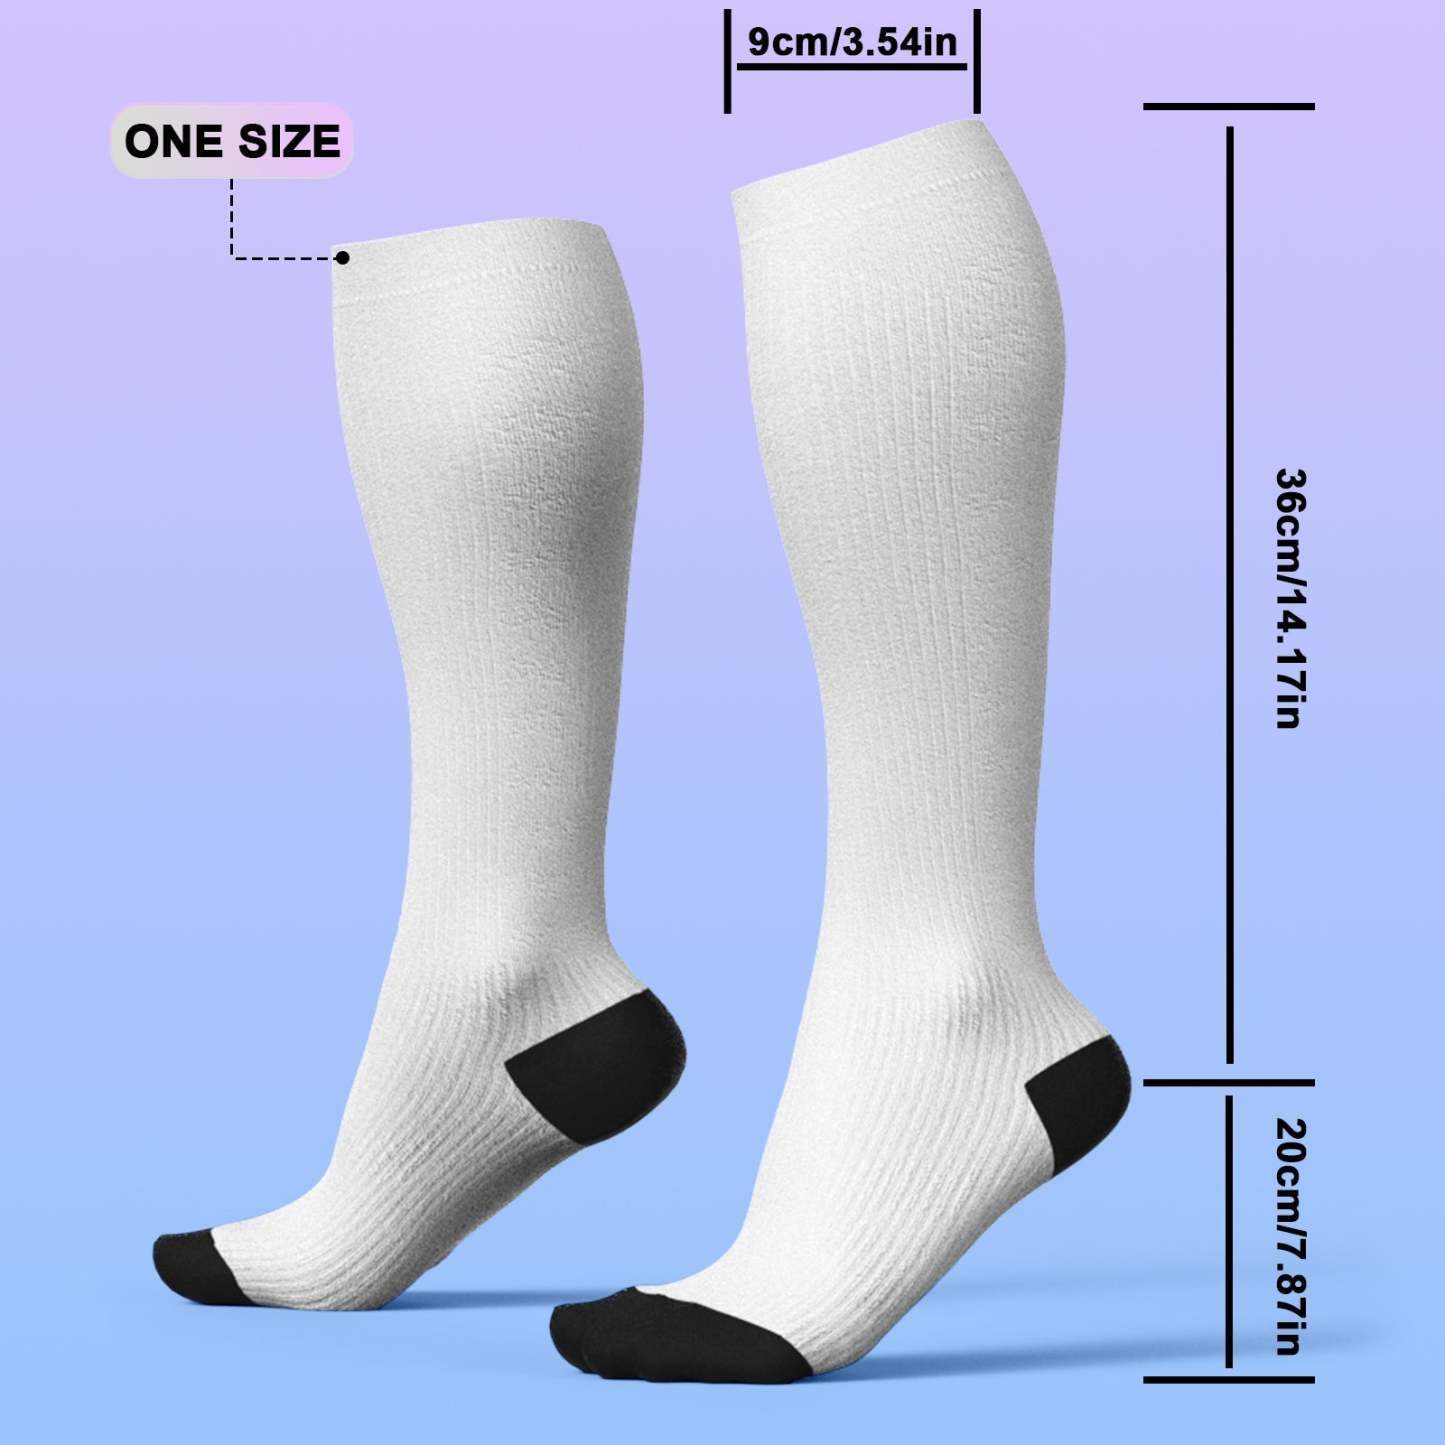 アップグレードカスタム通気性着圧ニーハイソックス - オンライン プレビューできるペットの写真と名前入れ可能な靴下ギフト